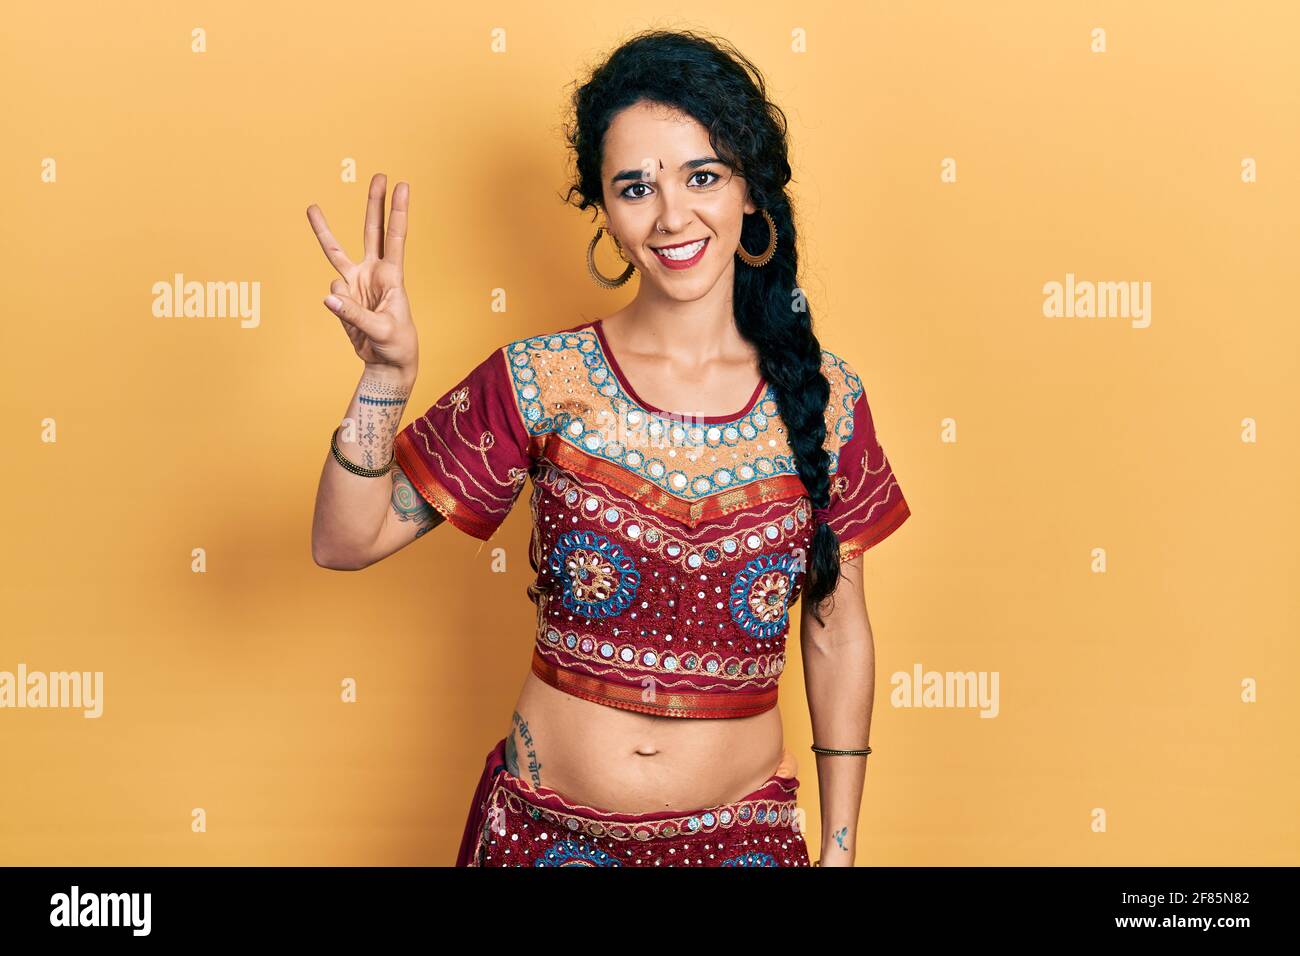 Junge Frau in Bindi- und bollywood-Kleidung zeigt und zeigt mit den Fingern Nummer drei auf, während sie selbstbewusst und glücklich lächelt. Stockfoto